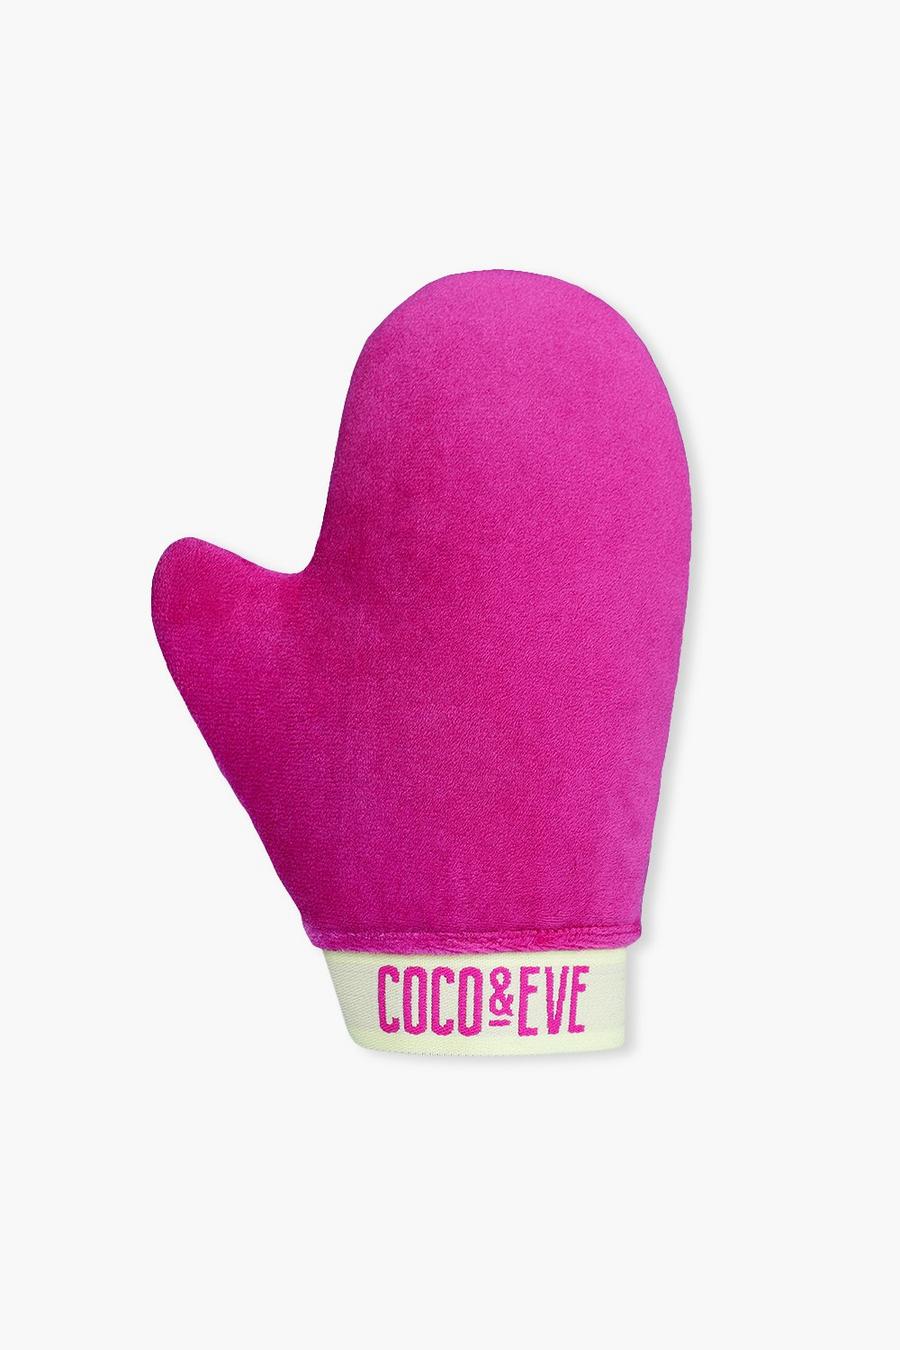 Coco & Eve - Guanto abbronzante Sunny Honey effetto velluto, Pink rosa